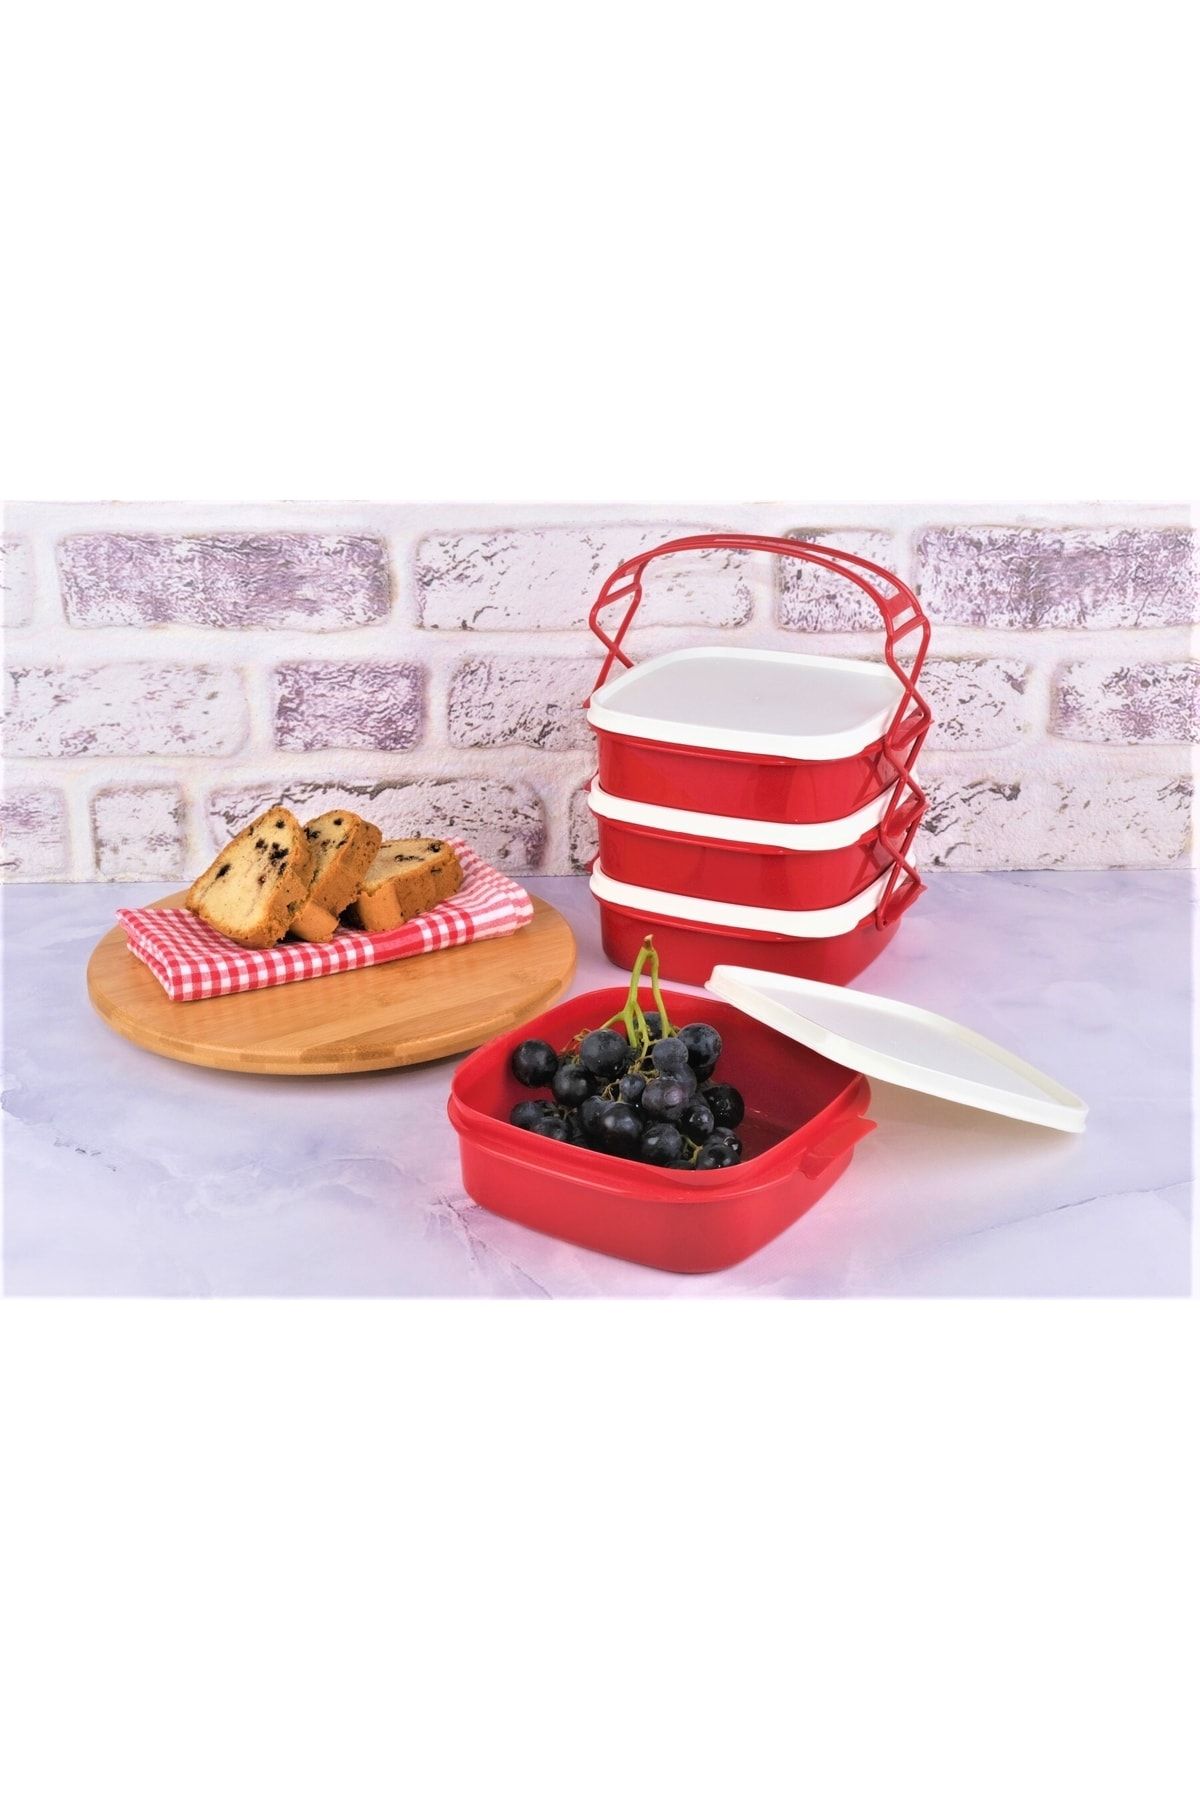 Kitchen Chef Tetra Lunch Box Saklama Düzenleme Kabı (4 KATLI) Kırmızı